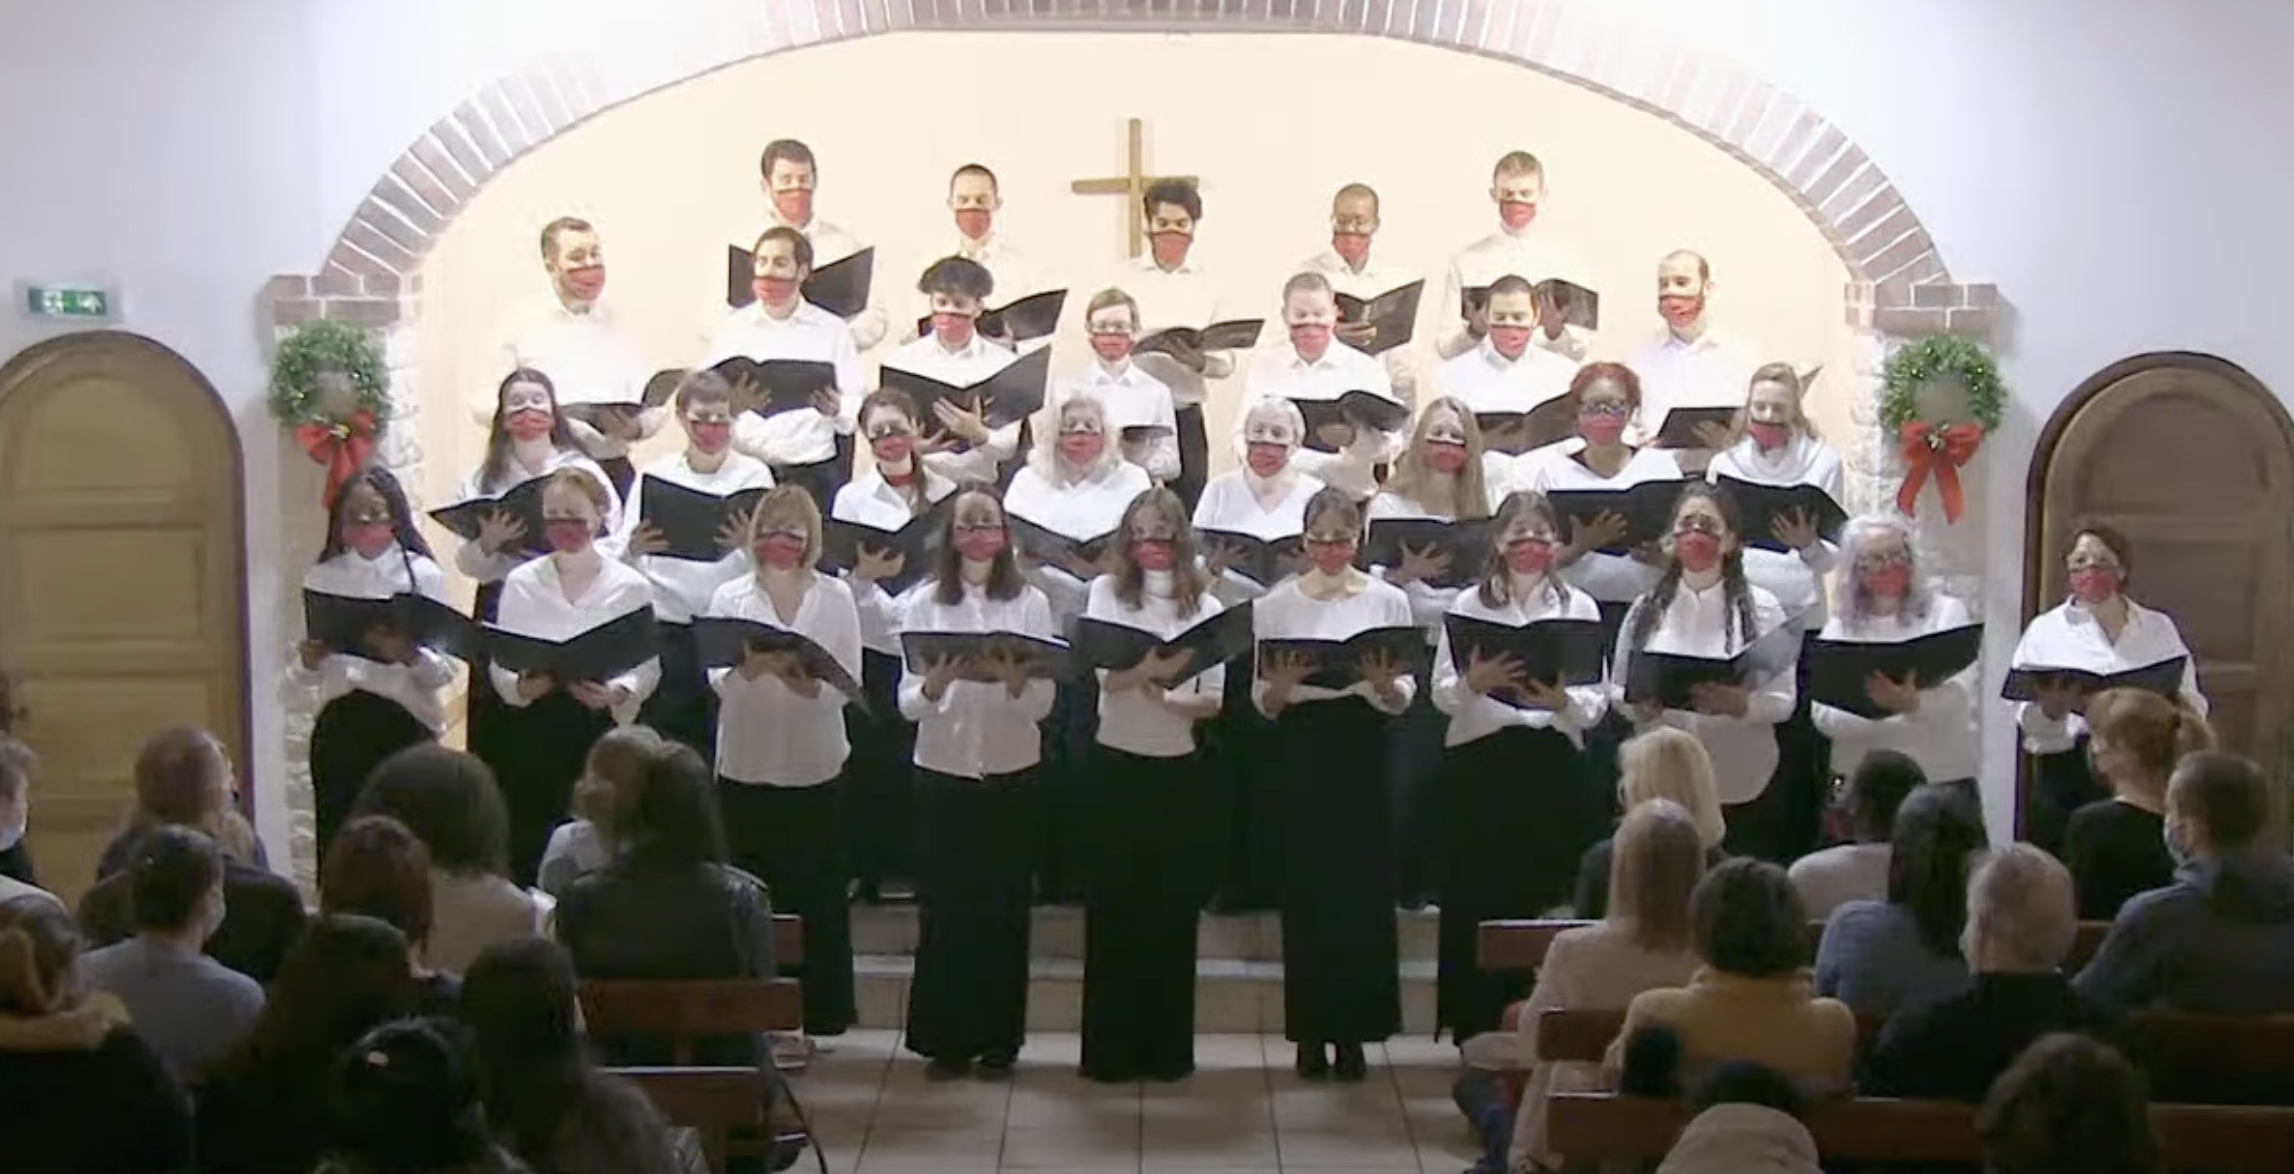  Concert de Noël à la Chapelle de Fuveau  Chorale Harmonie  